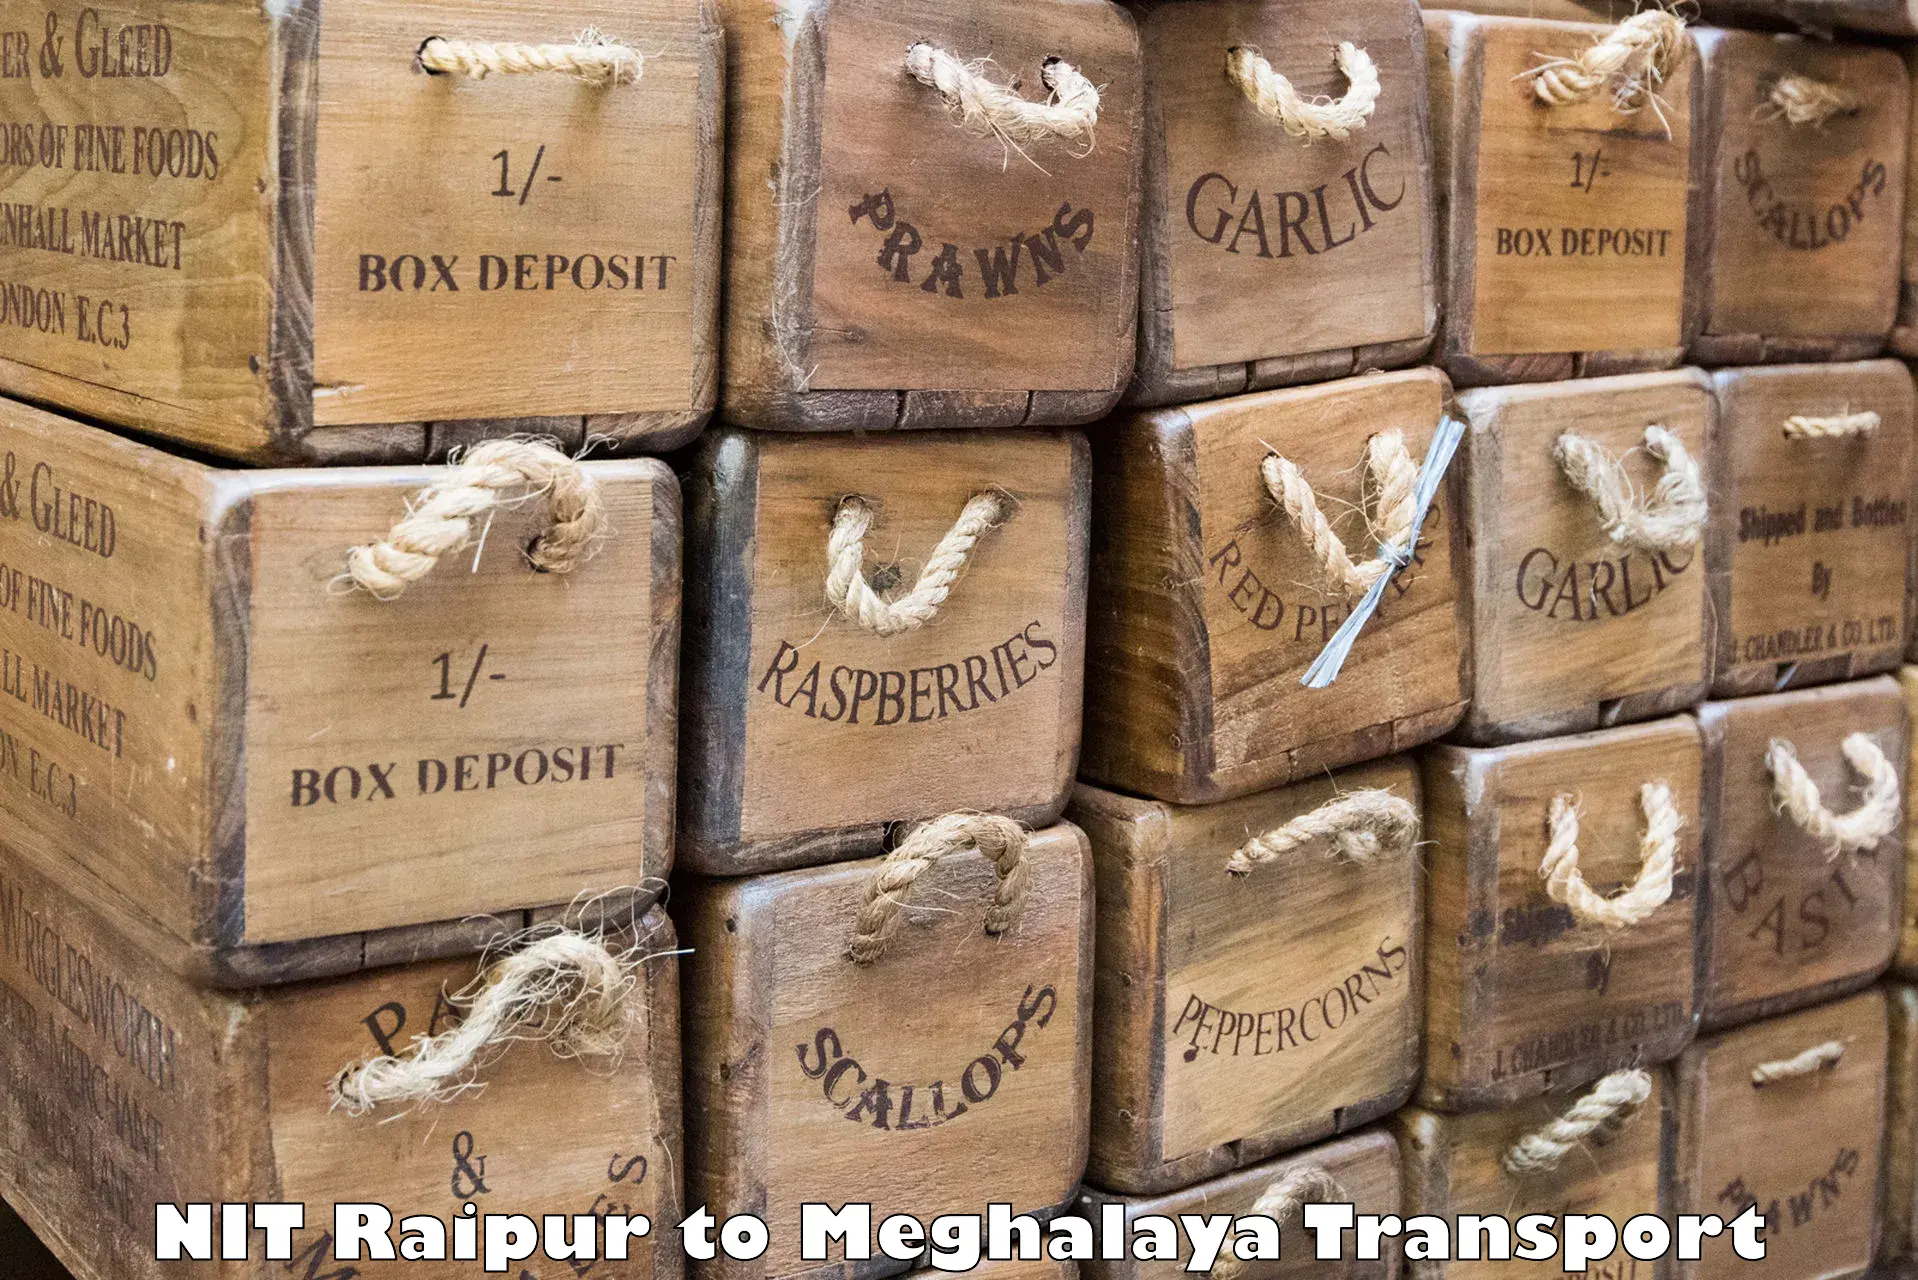 Express transport services NIT Raipur to NIT Meghalaya